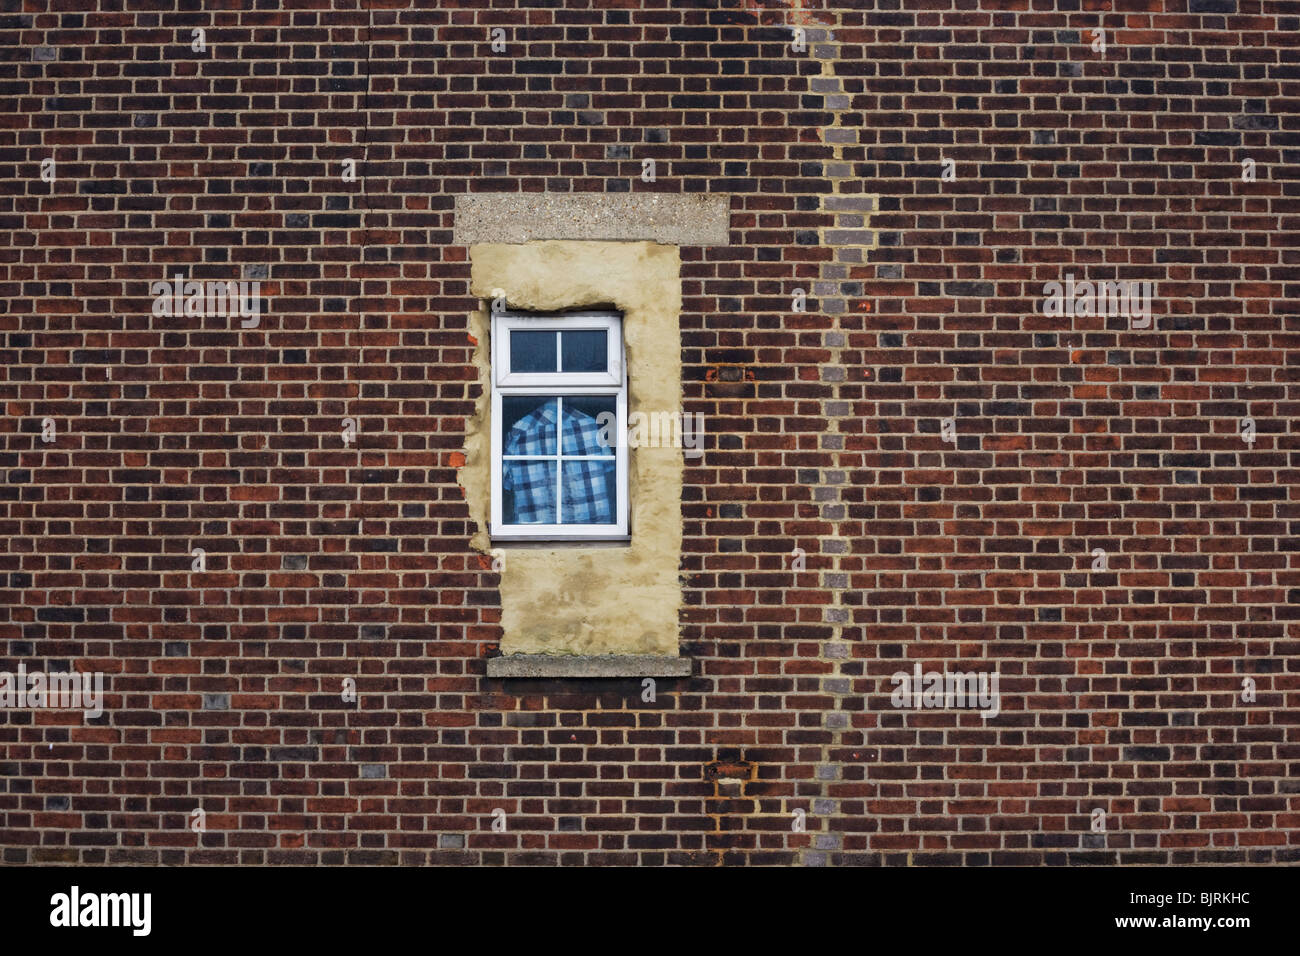 Ein kariertes Hemd hängt im Fenster einer Wohnung Fenster, schlecht aus mit Zement, inmitten einer rissigen Mauer fertig. Stockfoto